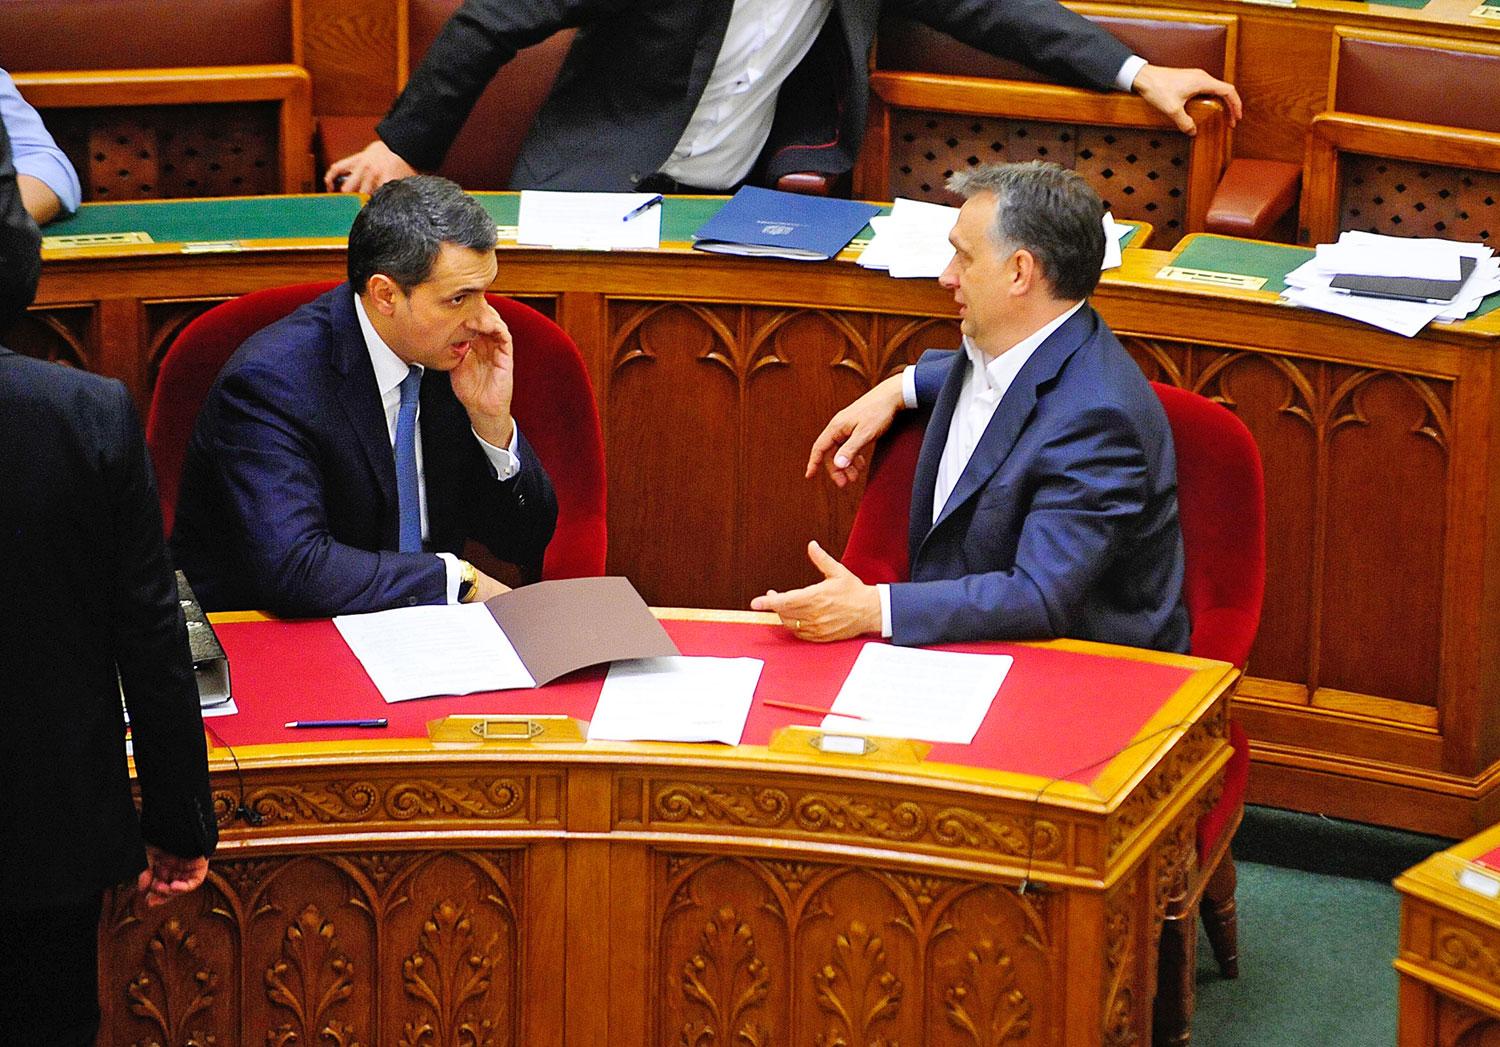 Az átalakítás ellenére Lázár János marad a legnagyobb hatalmú miniszter Orbán Viktor kormányában